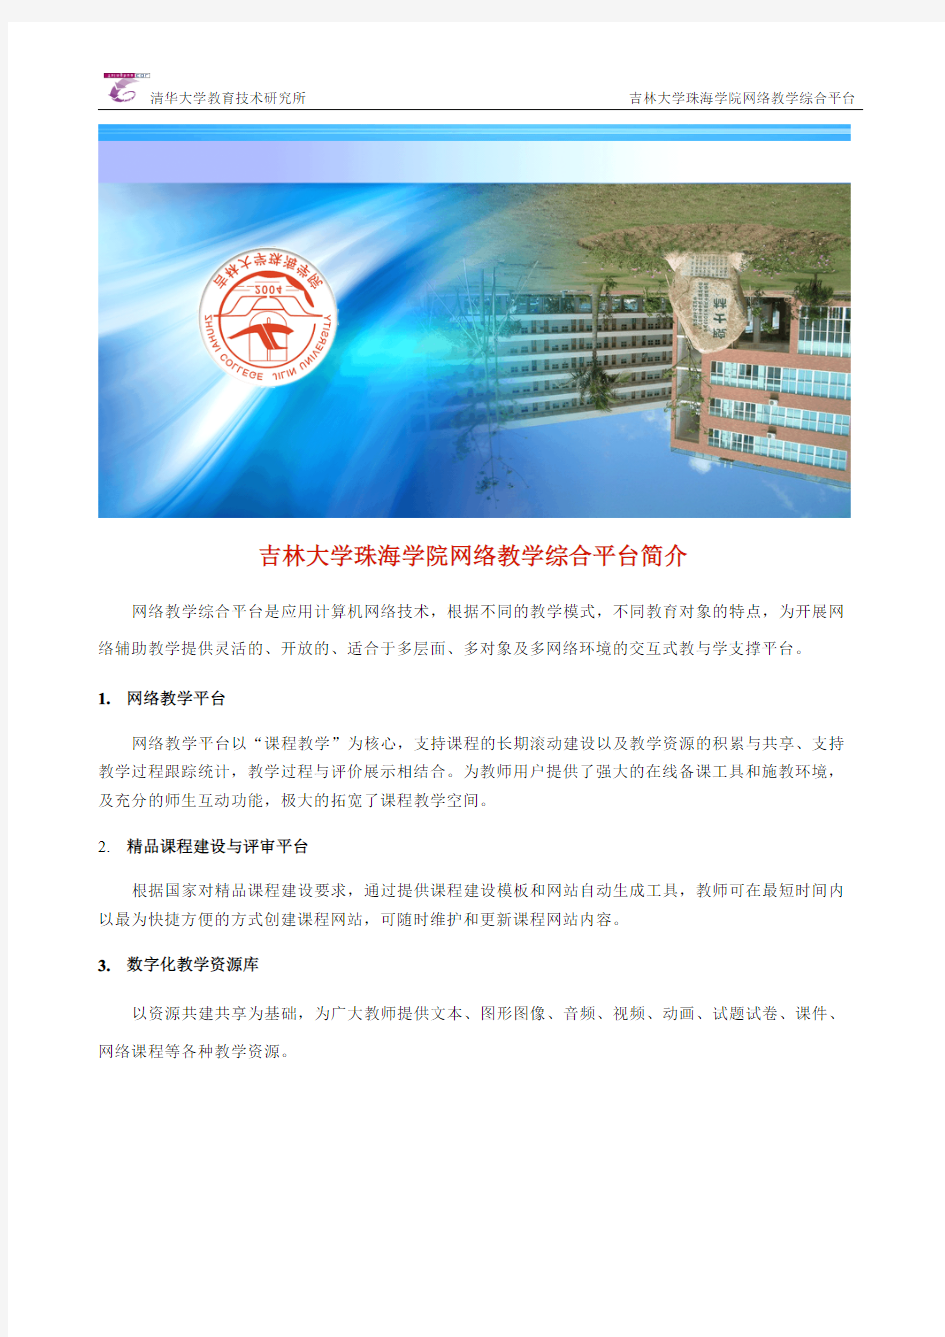 吉林大学珠海学院教师用户简明图文操作手册...